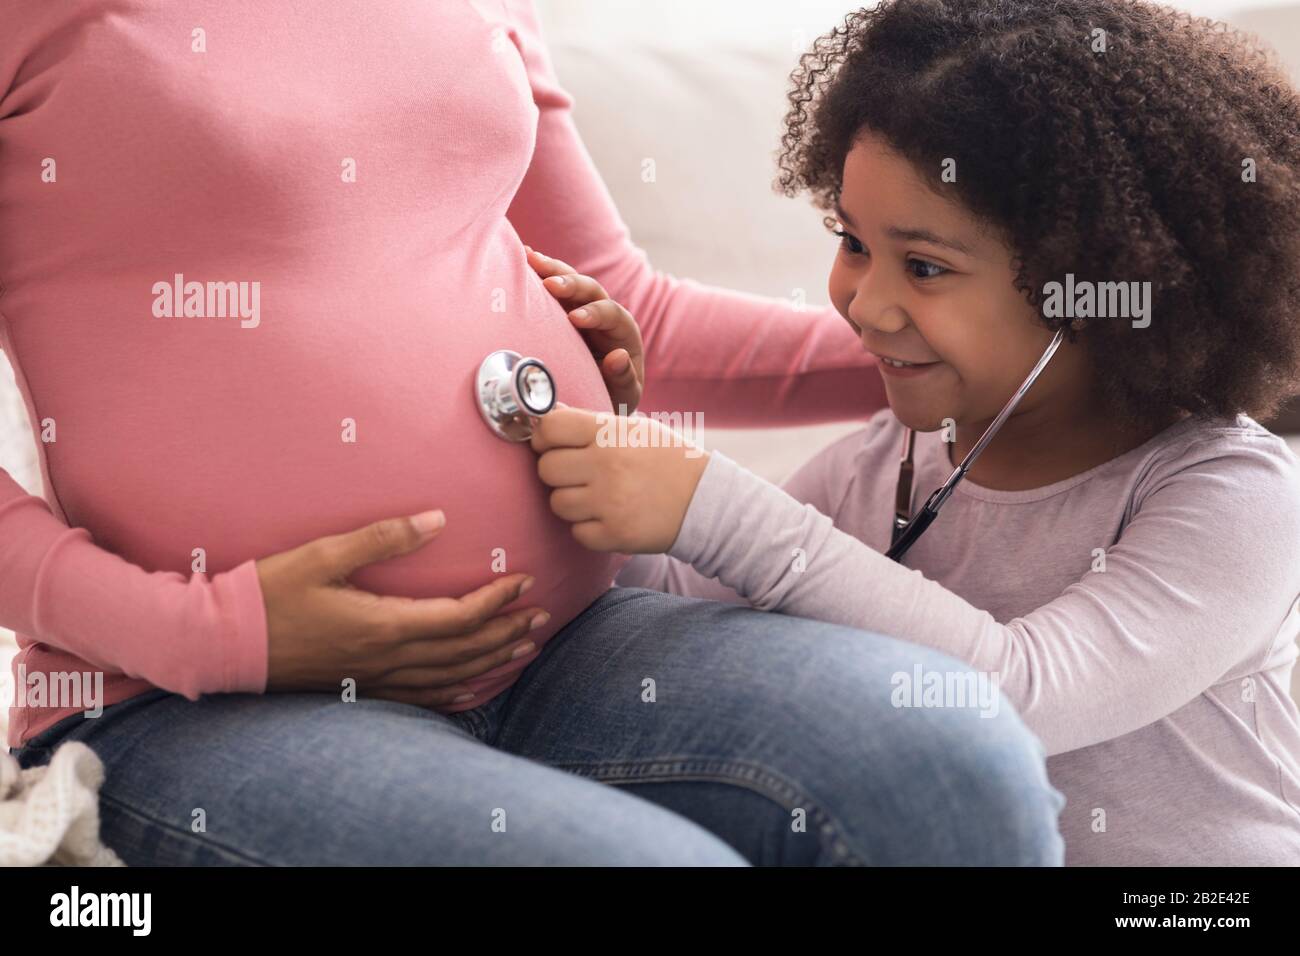 Überglücklich, Afro Girl Mit Stethoskop Den Schwangeren Bauch Ihrer Mutter Hört Stockfoto